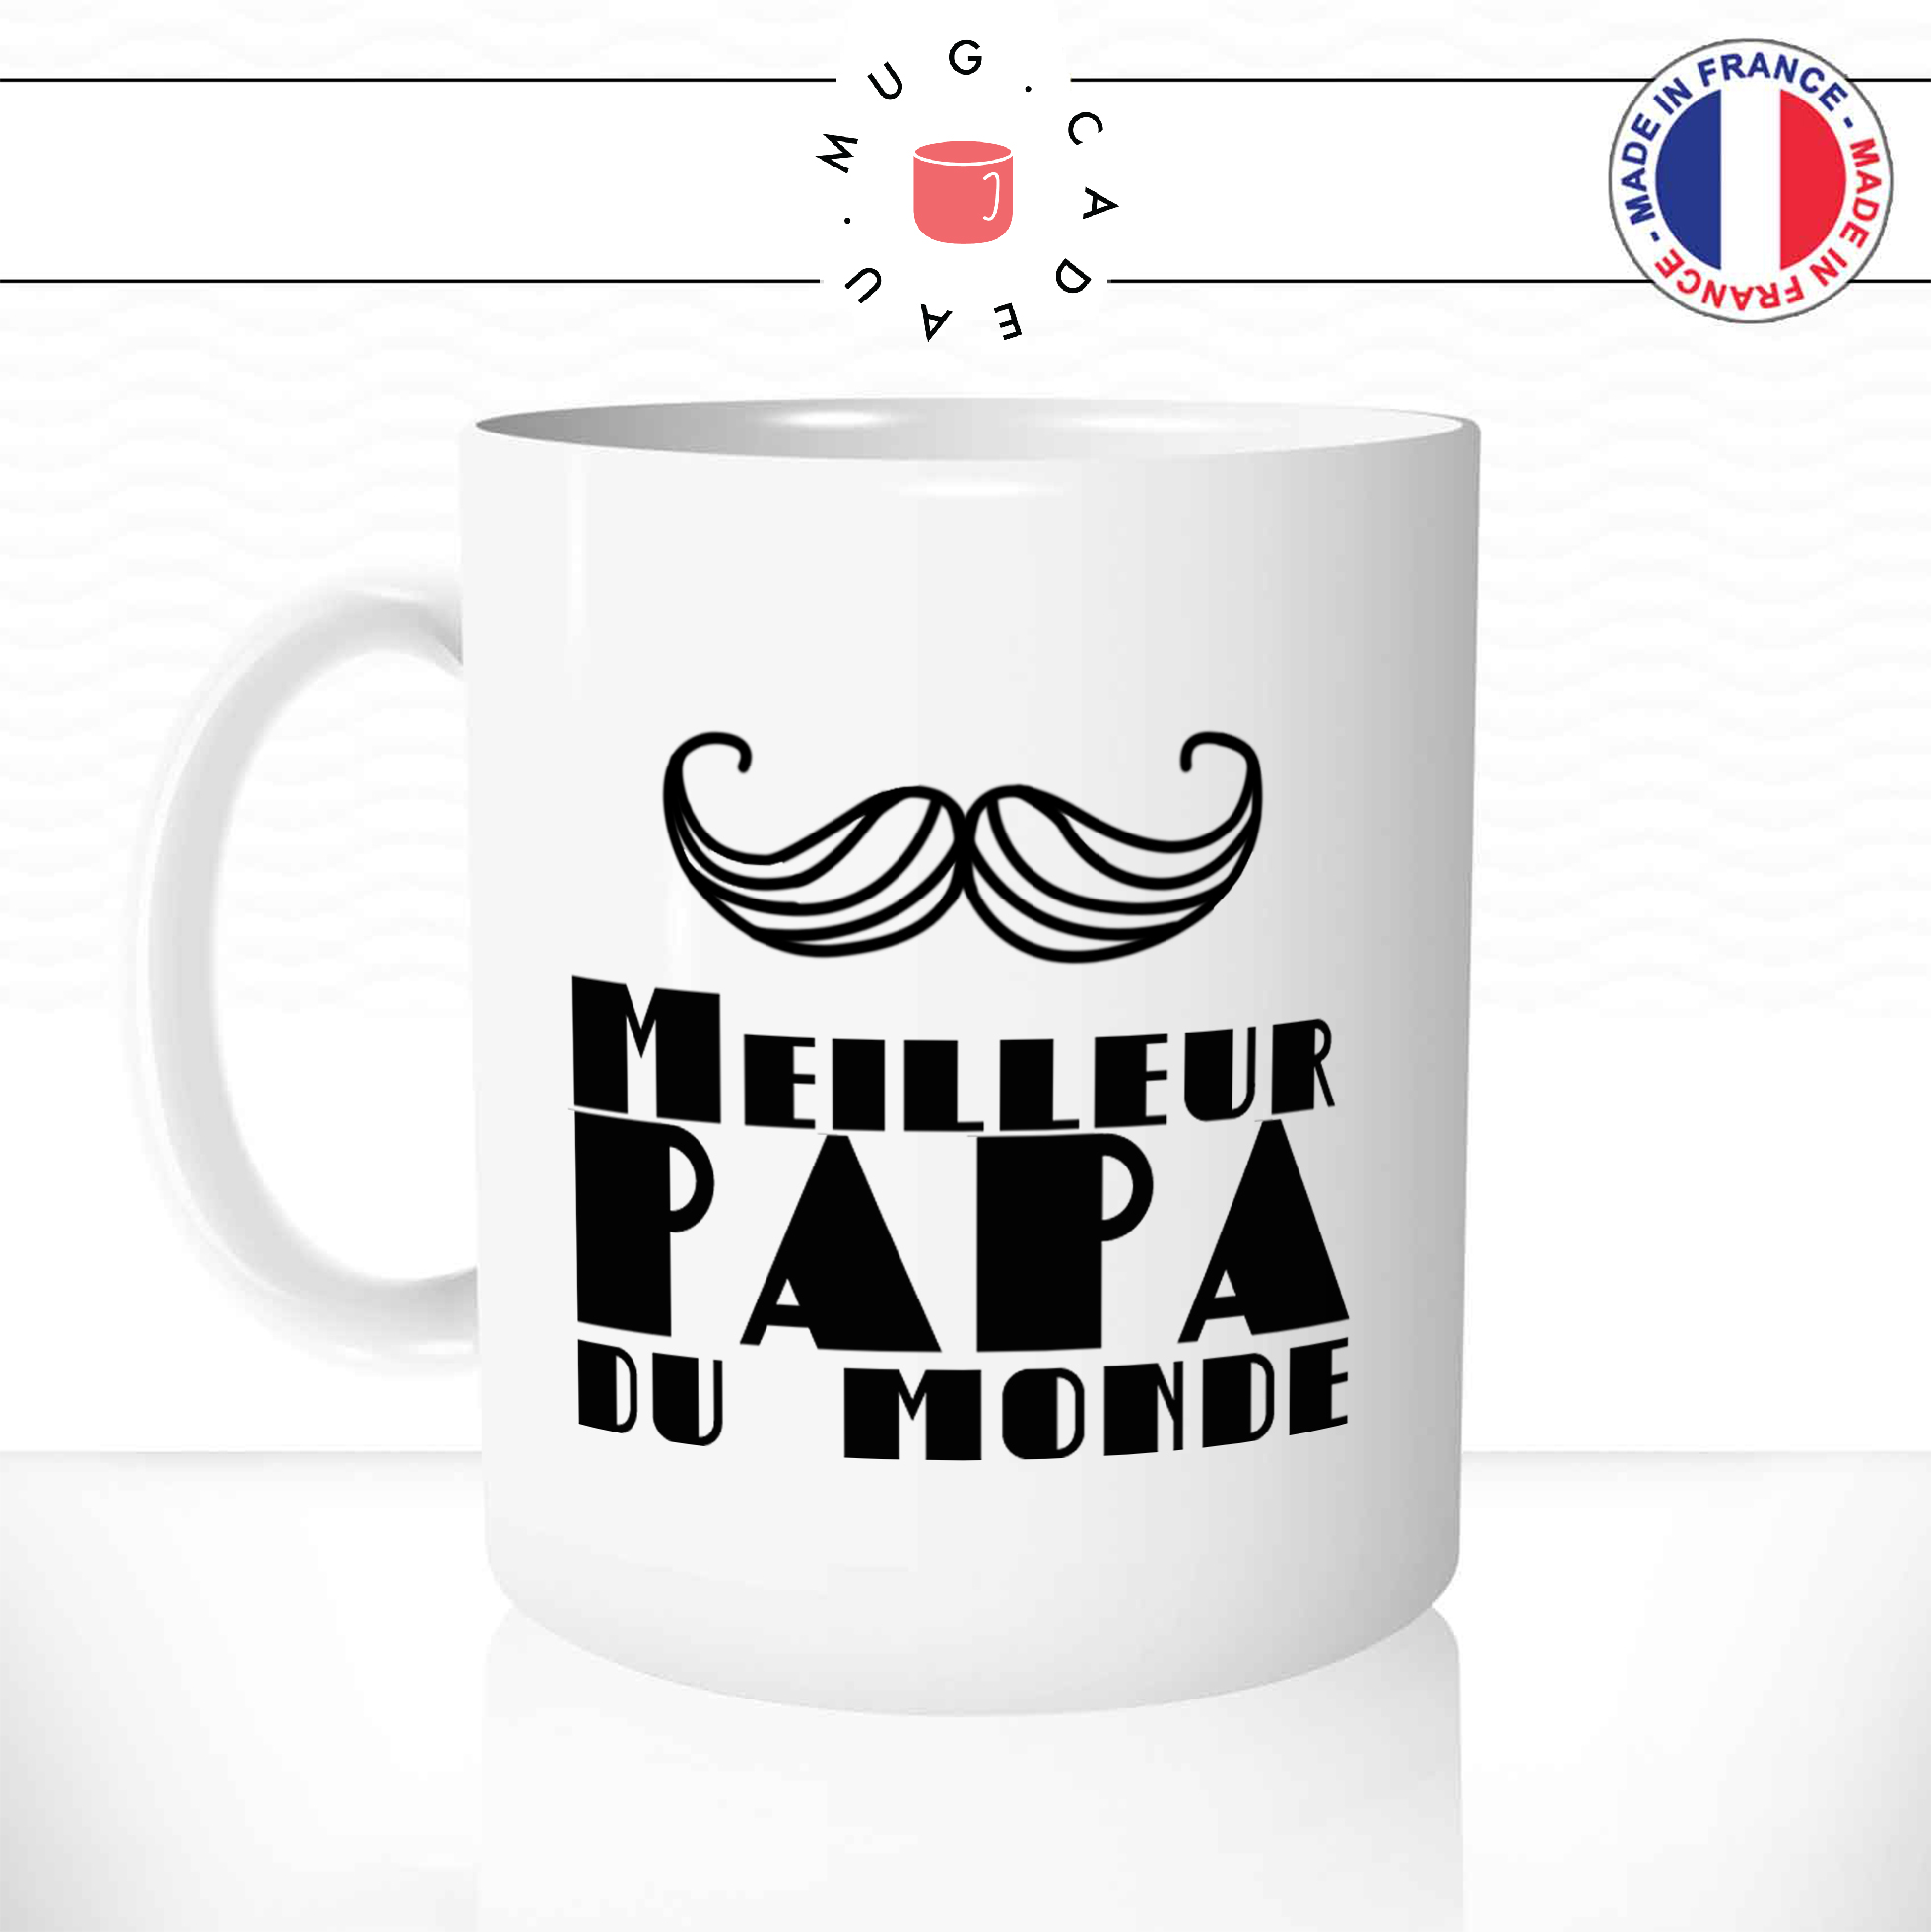 mug-tasse-ref1-fete-des-peres-meilleur-papa-du-monde-moustache-cafe-the-mugs-tasses-personnalise-anse-gauche